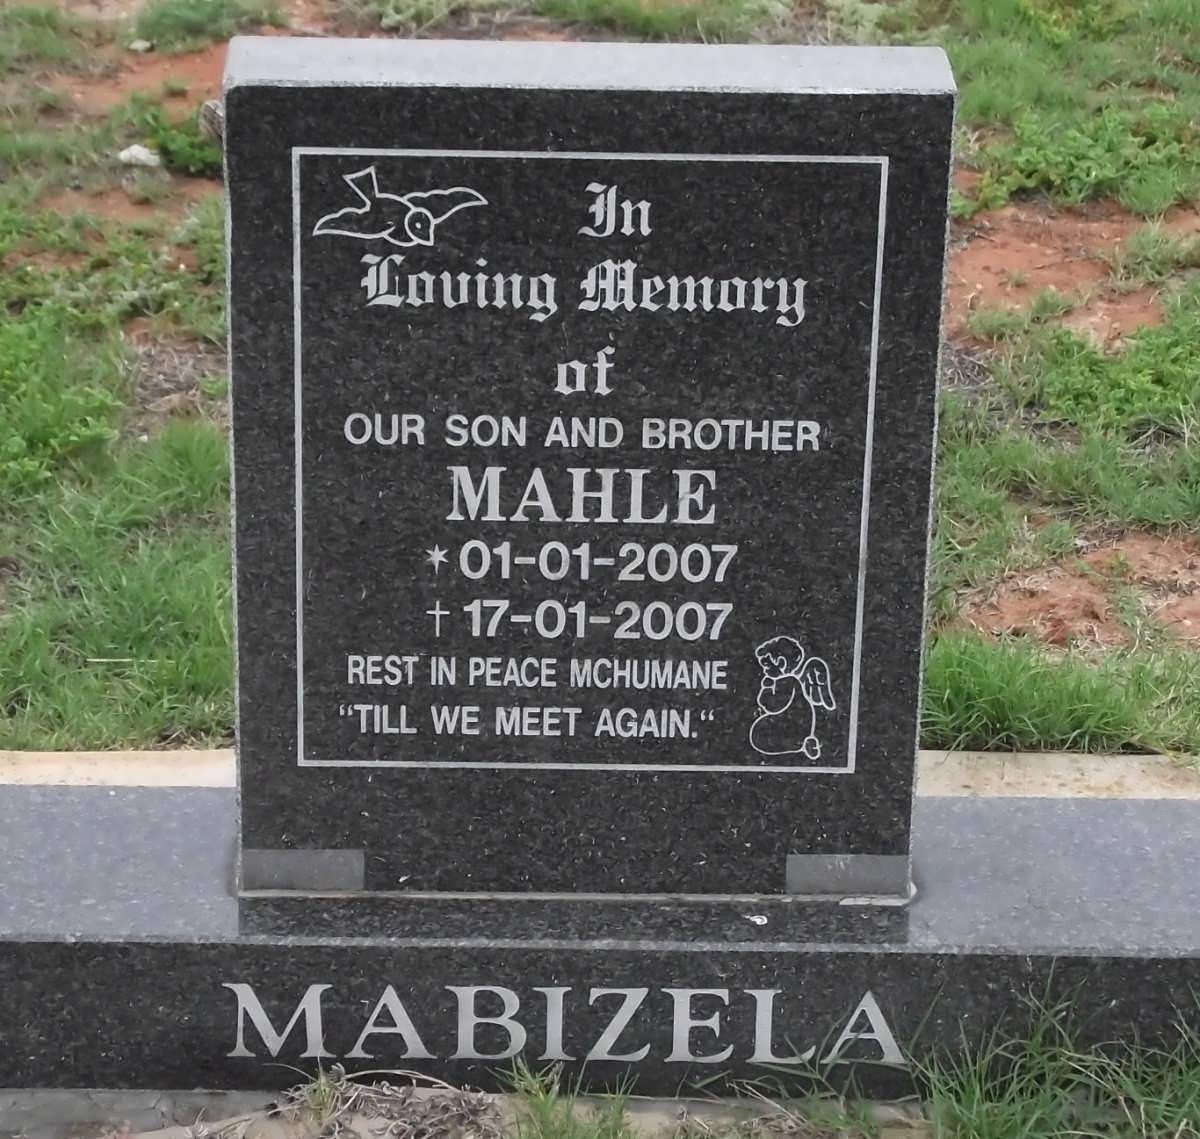 MABIZELA Mahle 2007-2007